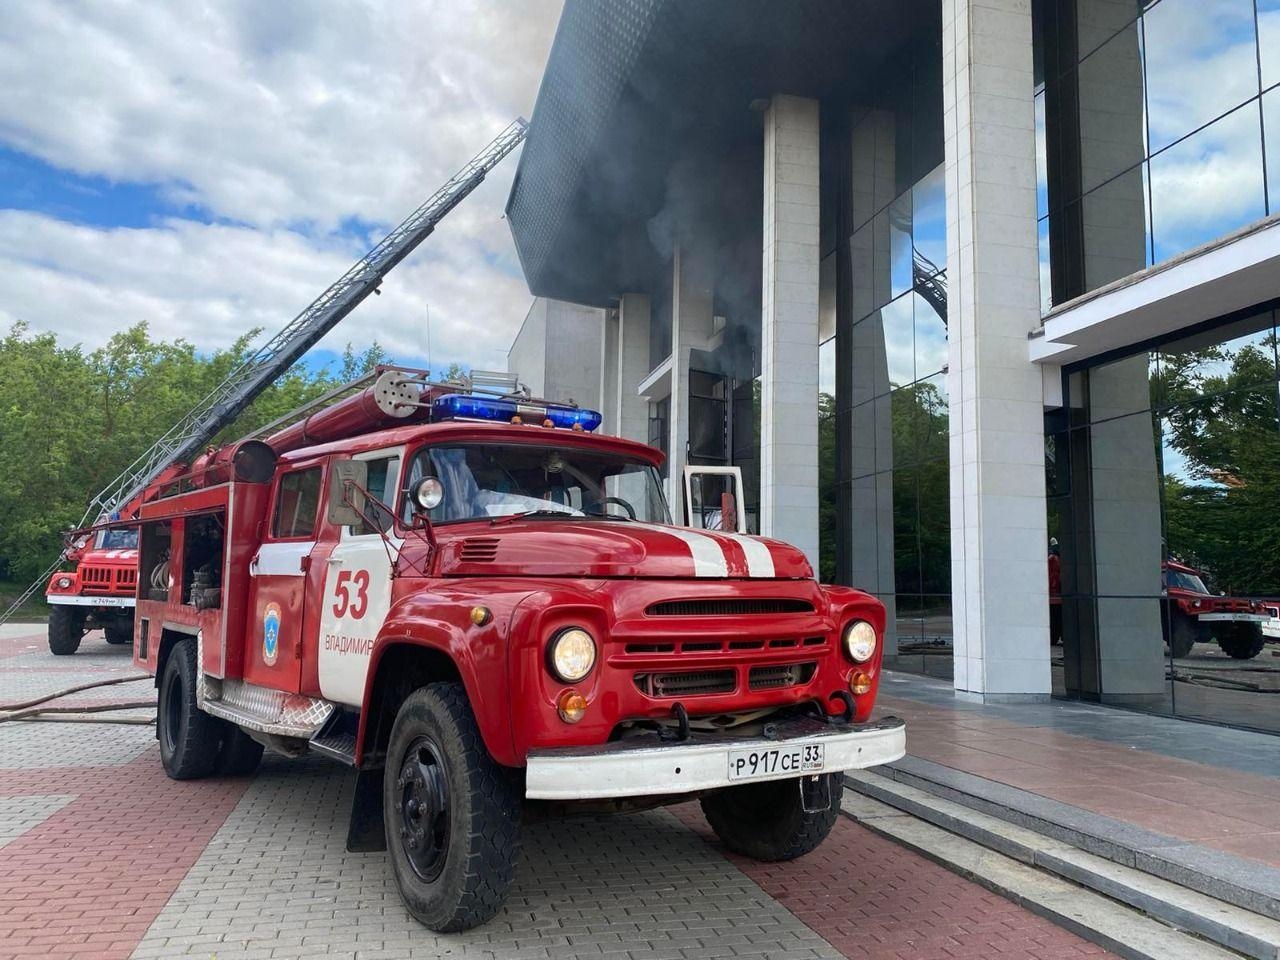 Драмтеатр горит во Владимирской области